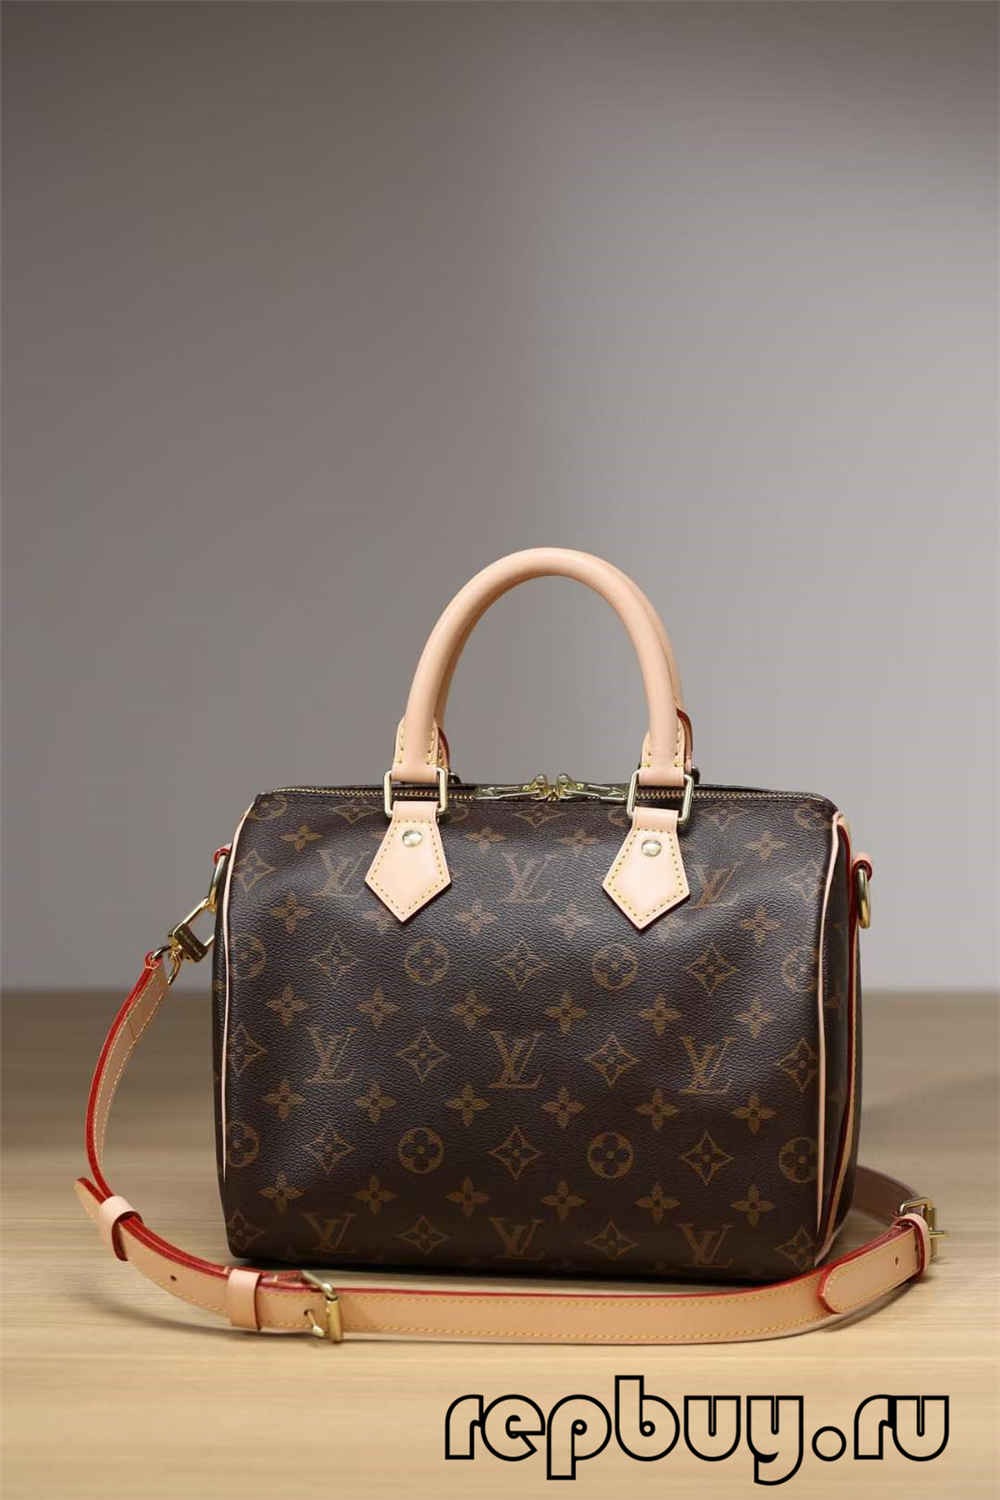 Pi bon kalite Louis Vuitton Speedy 25 sak replik fè makèt sou entènèt （2022 mete ajou）-Best Quality Fake Louis Vuitton Bag Online Store, Replica designer bag ru